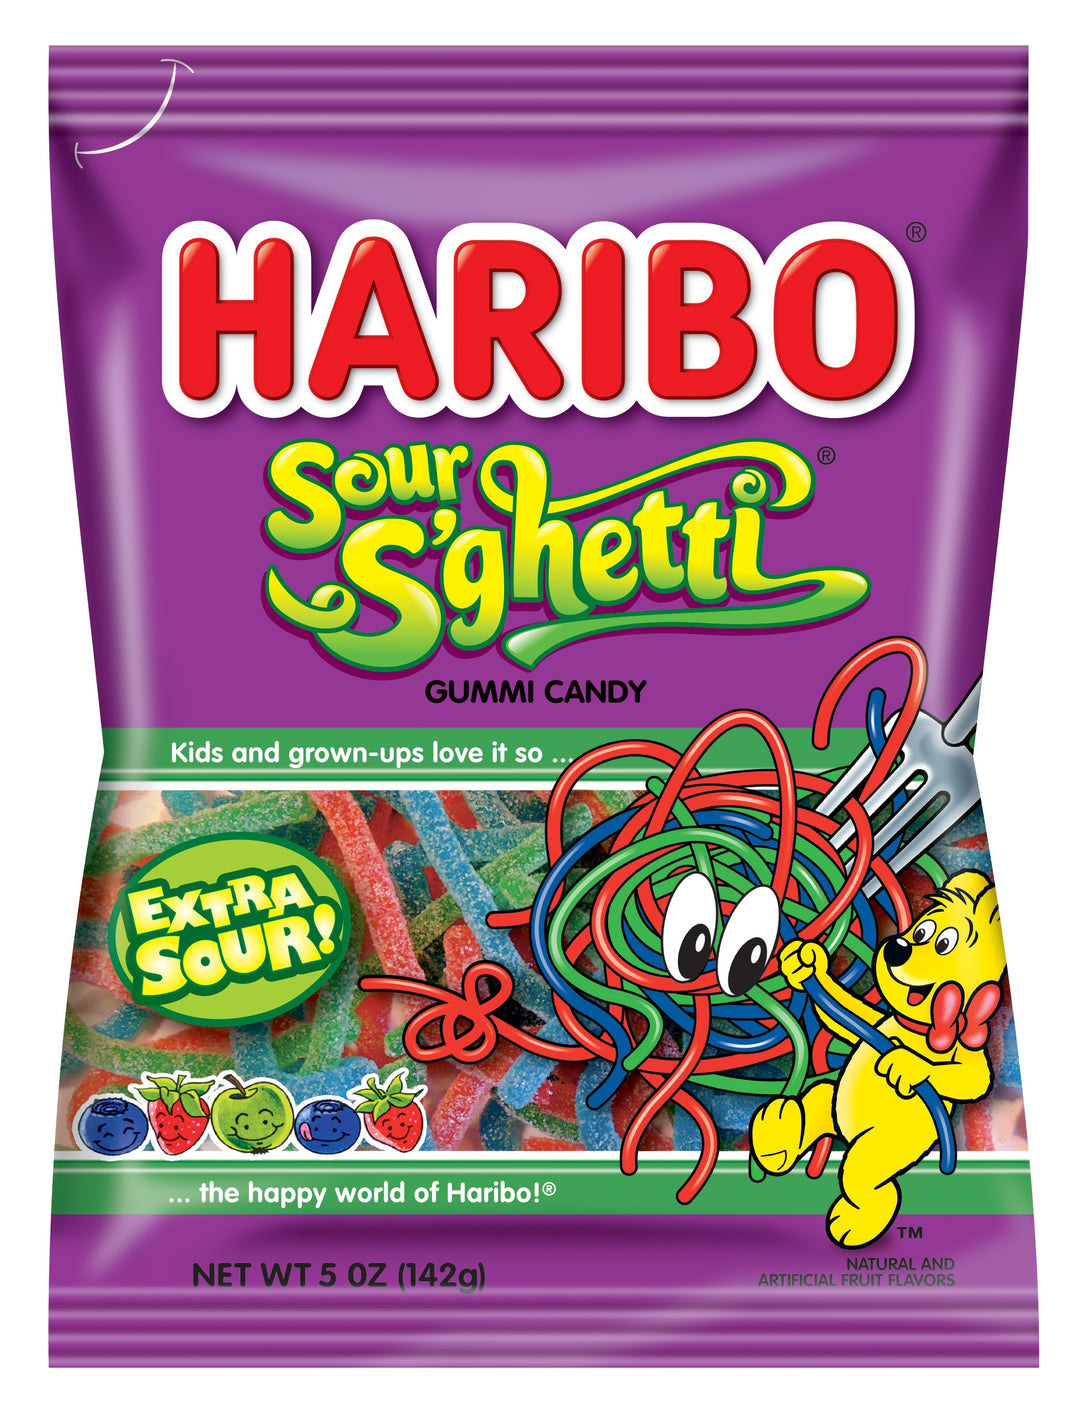 Haribo Sour S'ghetti Gummi Candy-5 oz.-12/Case